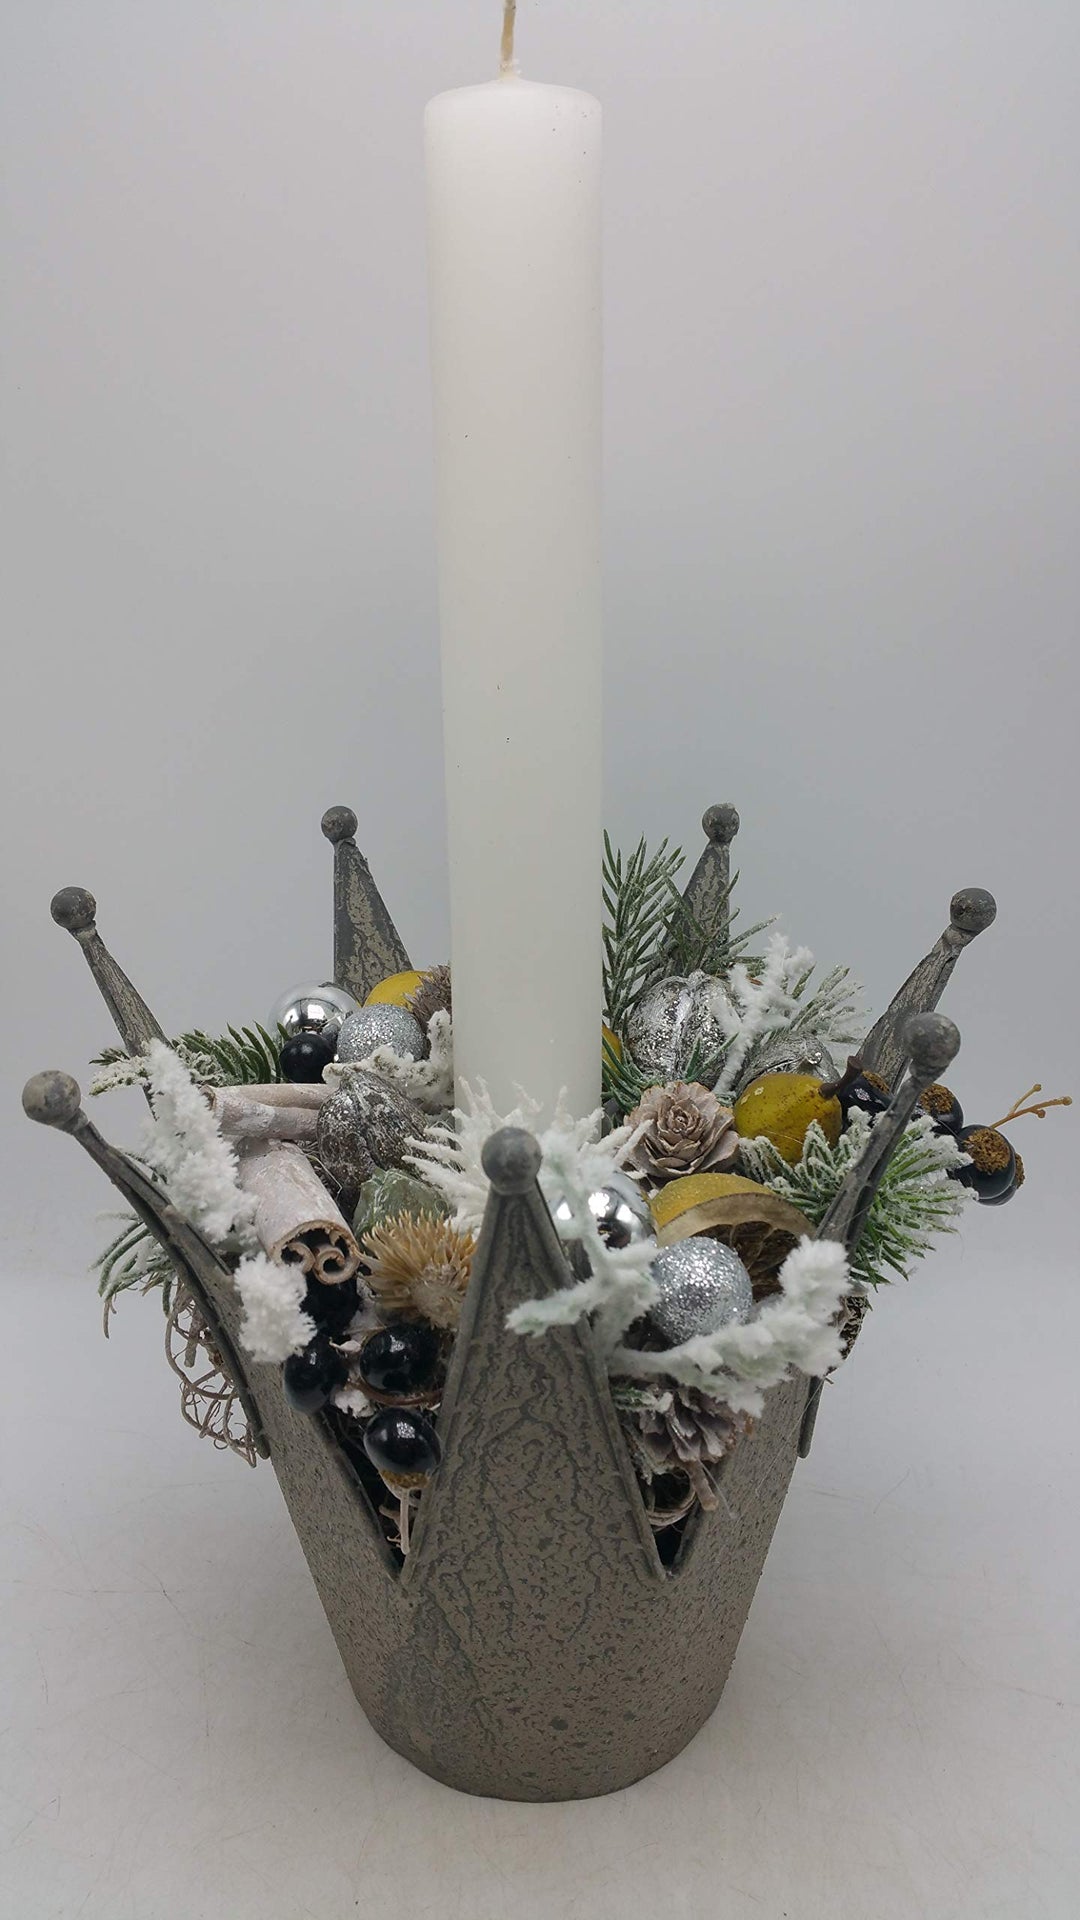 Weihnachtsgesteck Adventsgesteck Kunstfloristik Kerze Kugeln Zapfen Beeren Krone